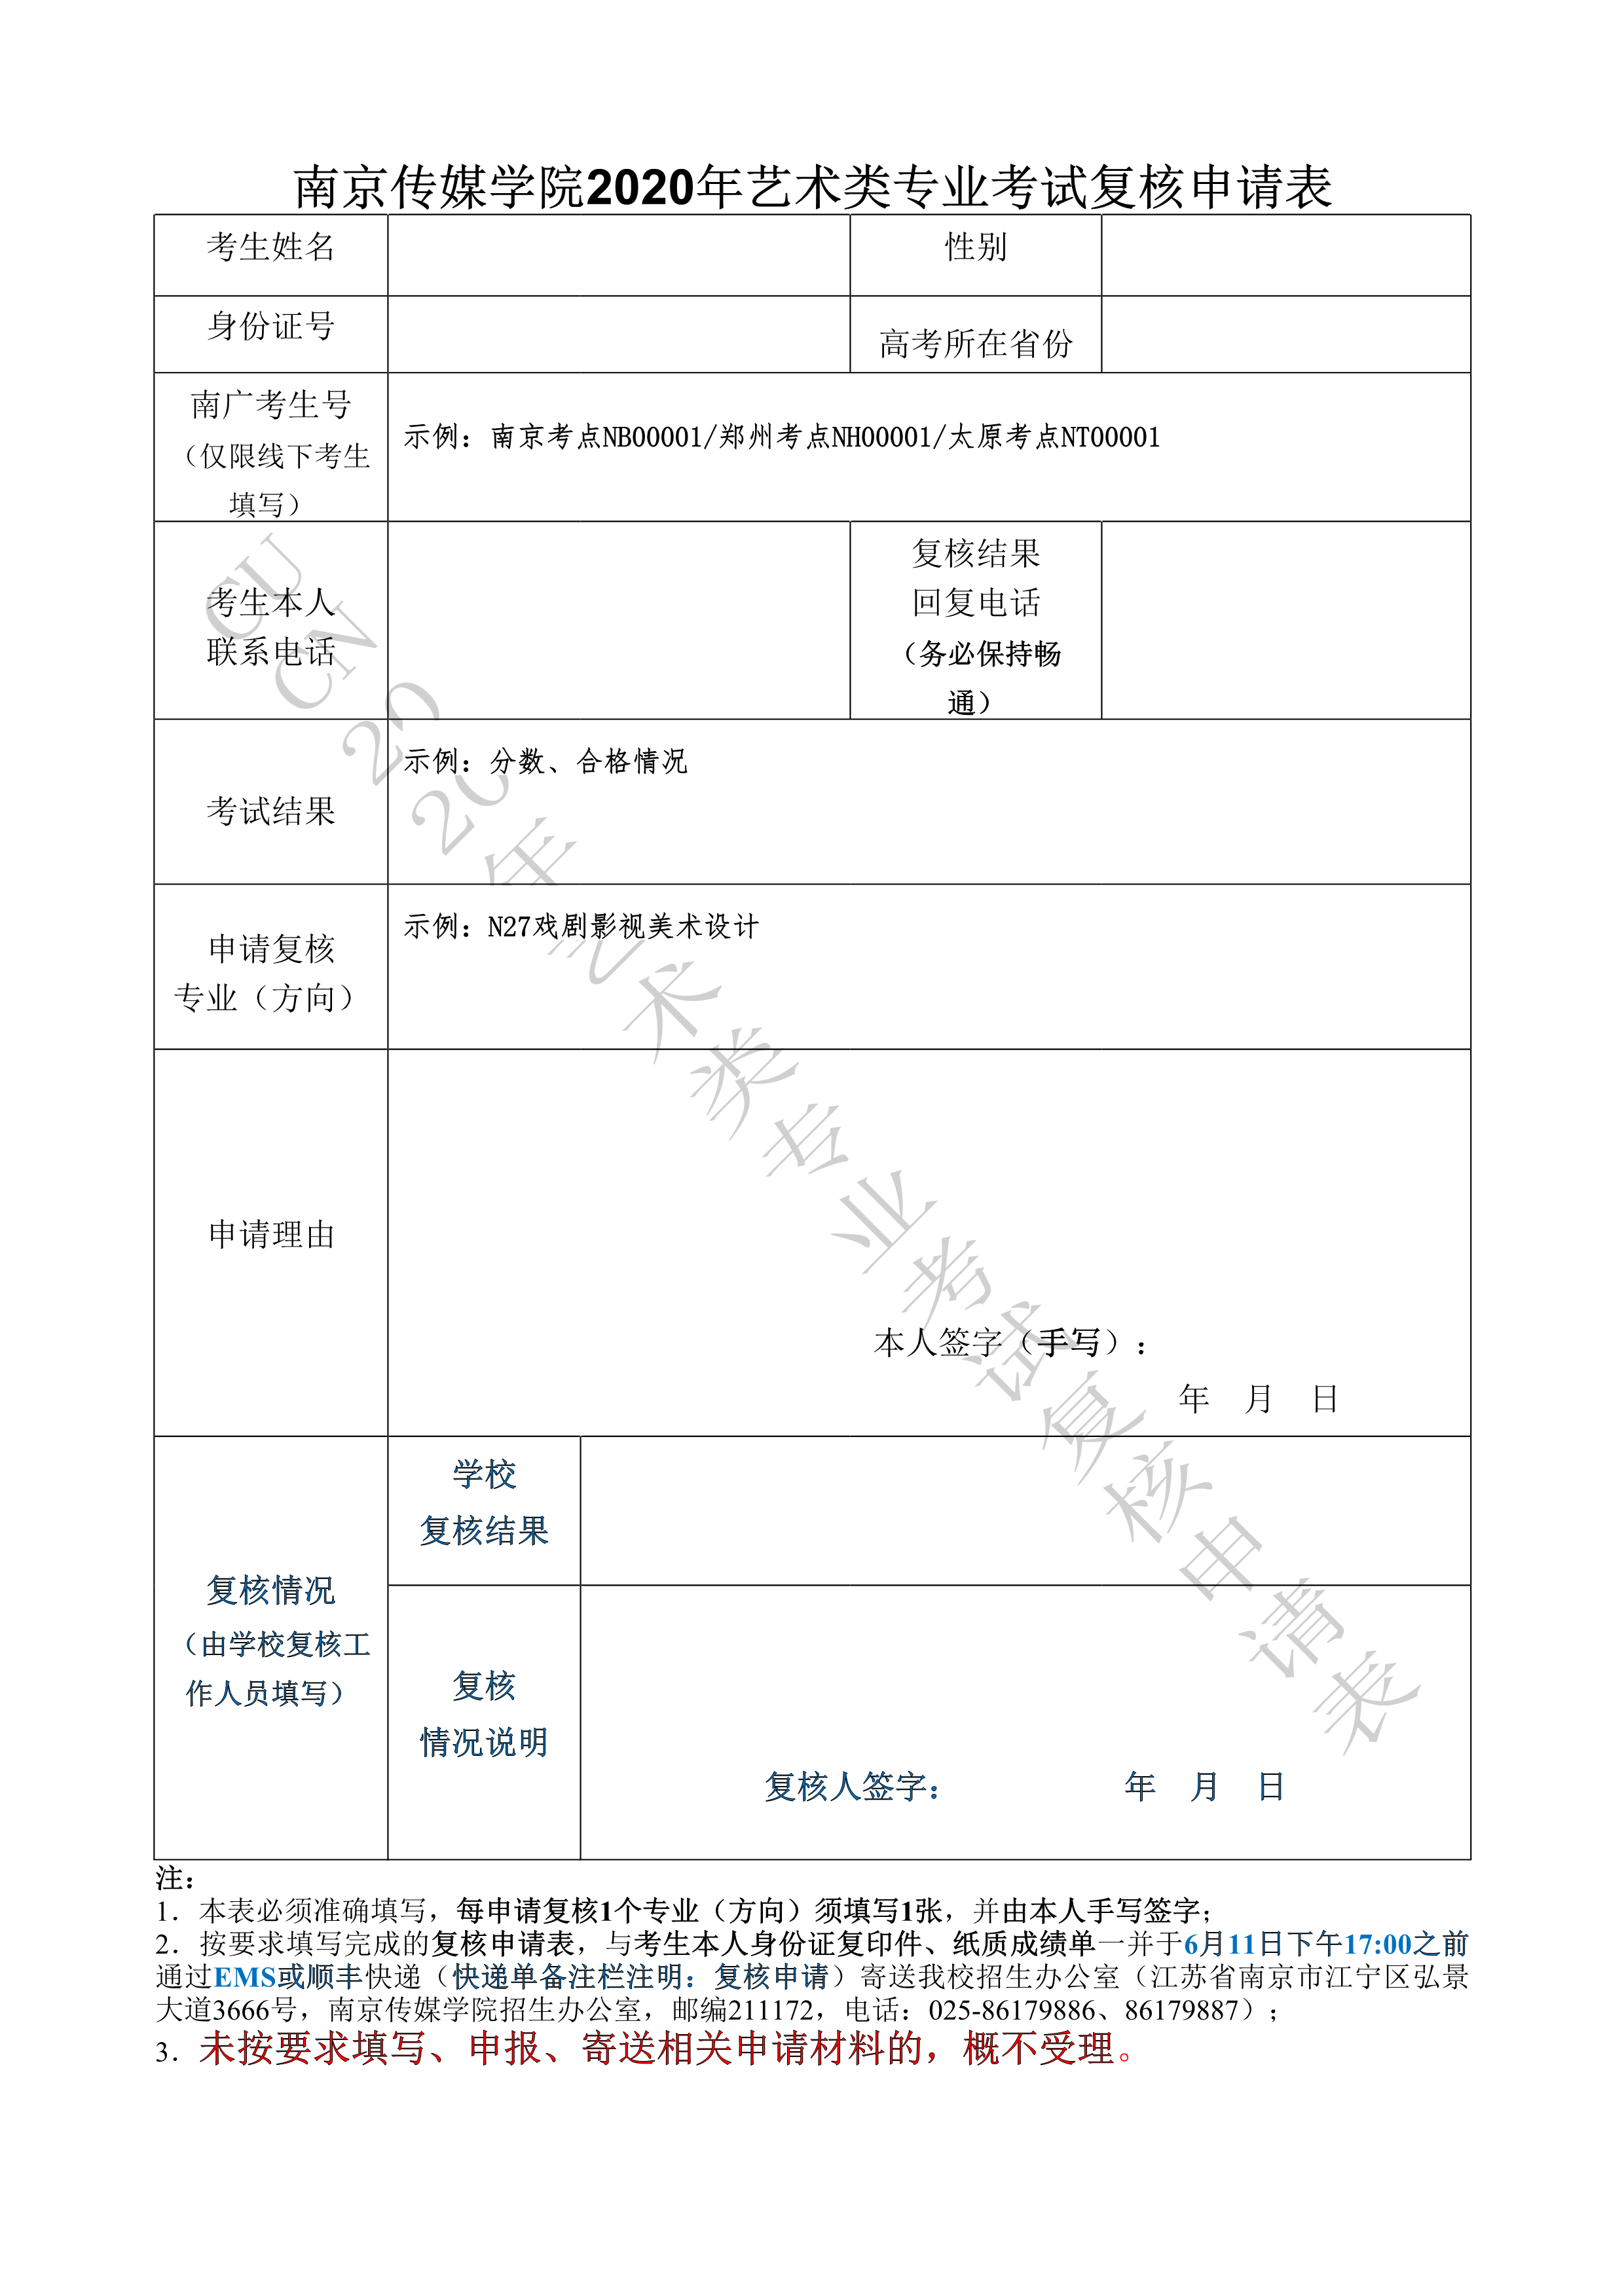 南京传媒学院2020年艺术类专业考试复核申请表_1.png